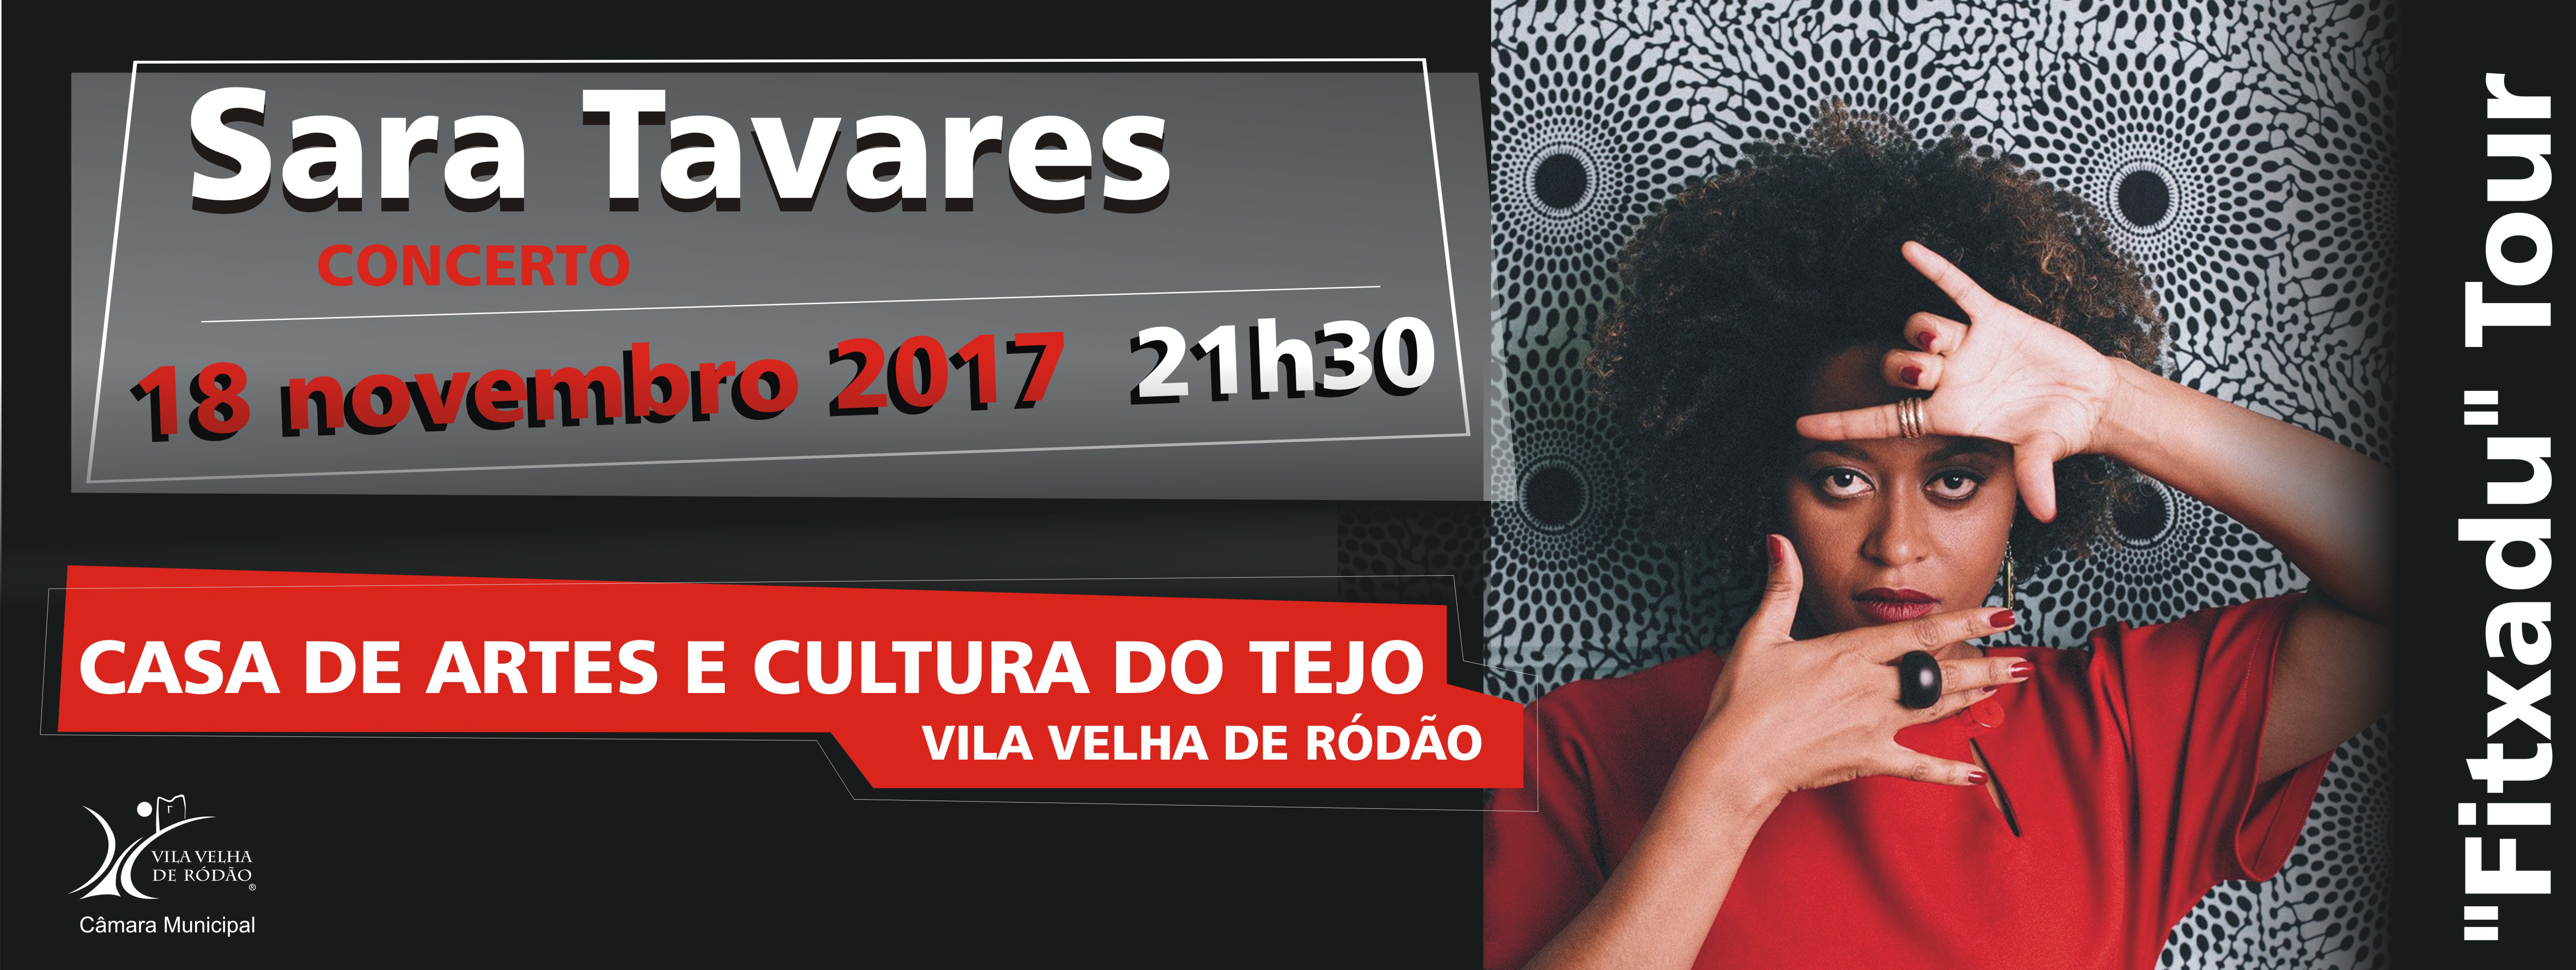 Vila Velha de Ródão: Sara Tavares dia 18 na Casa de Artes e Cultura do Tejo